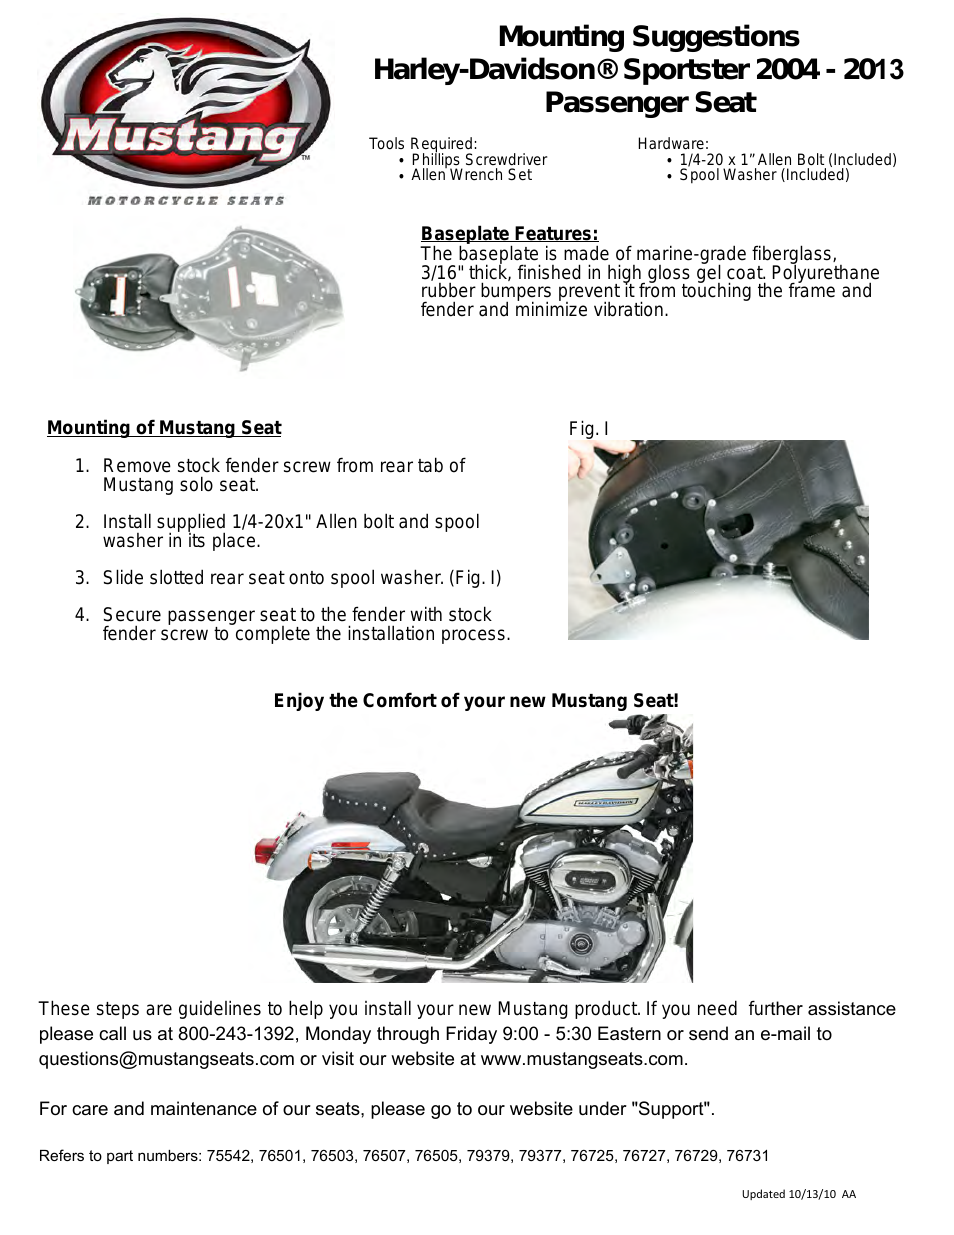 Deluxe Tripper Rear Seat - Harley-Davidson XL Sportster